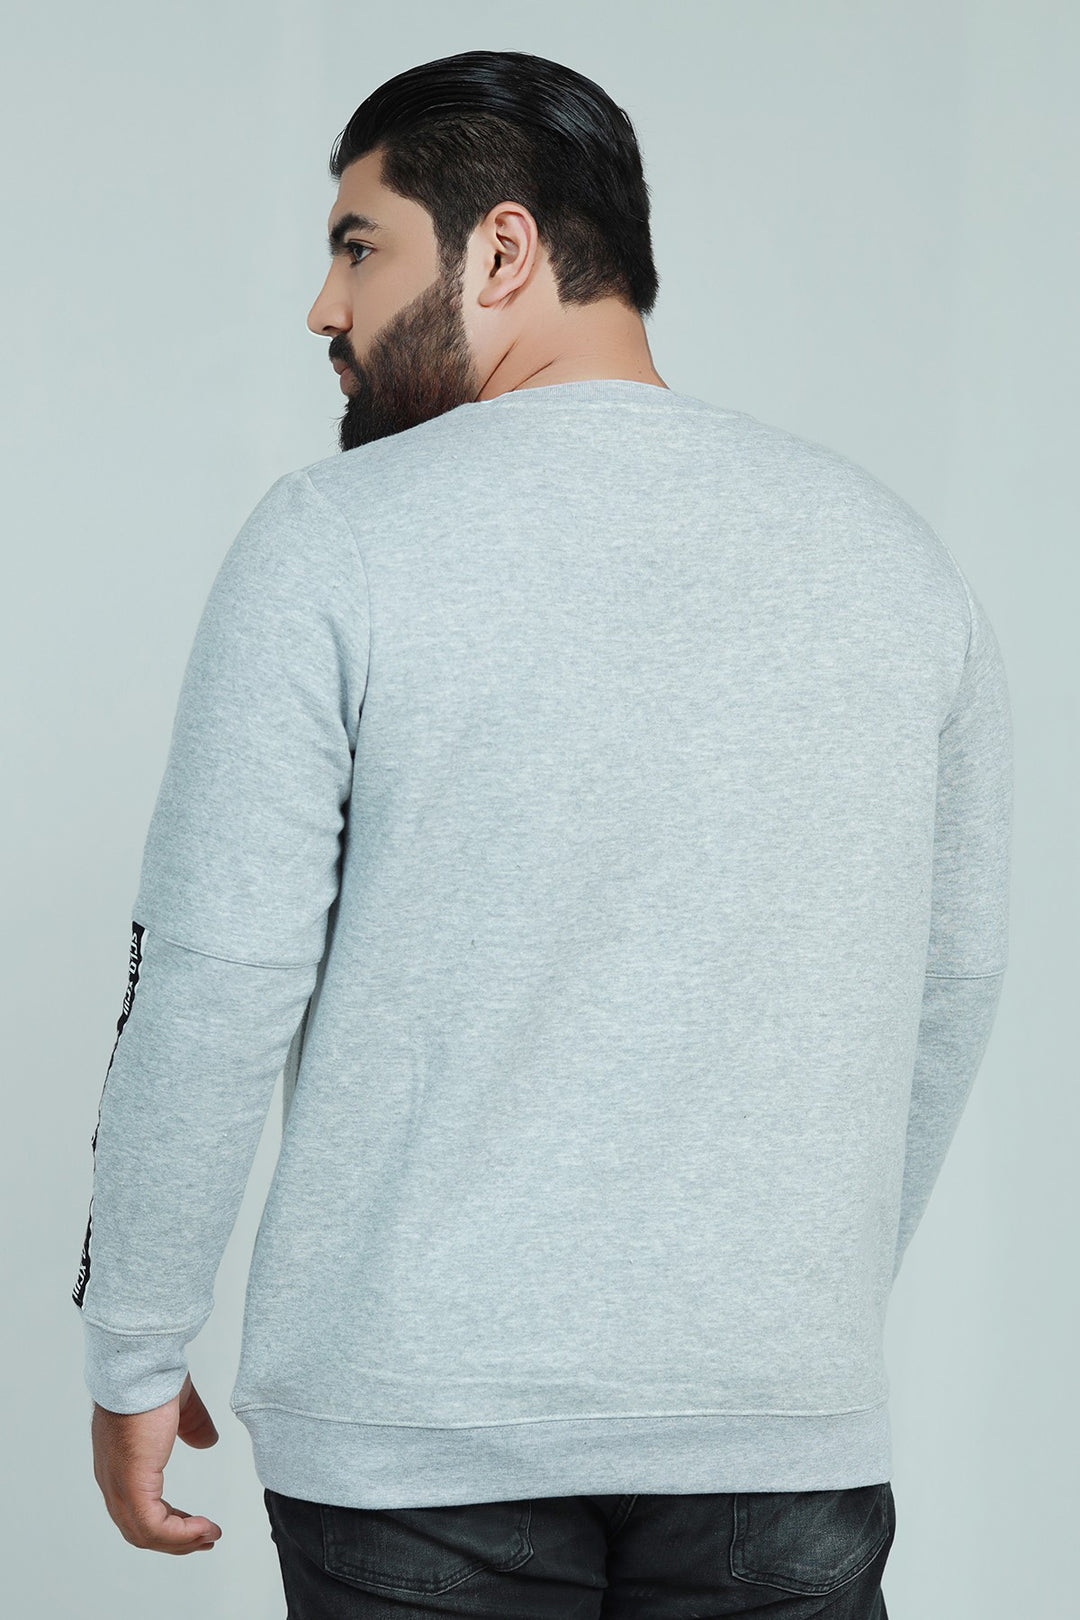 Grey Graphic Sweatshirt (Plus Size) - W21 - MSW019P